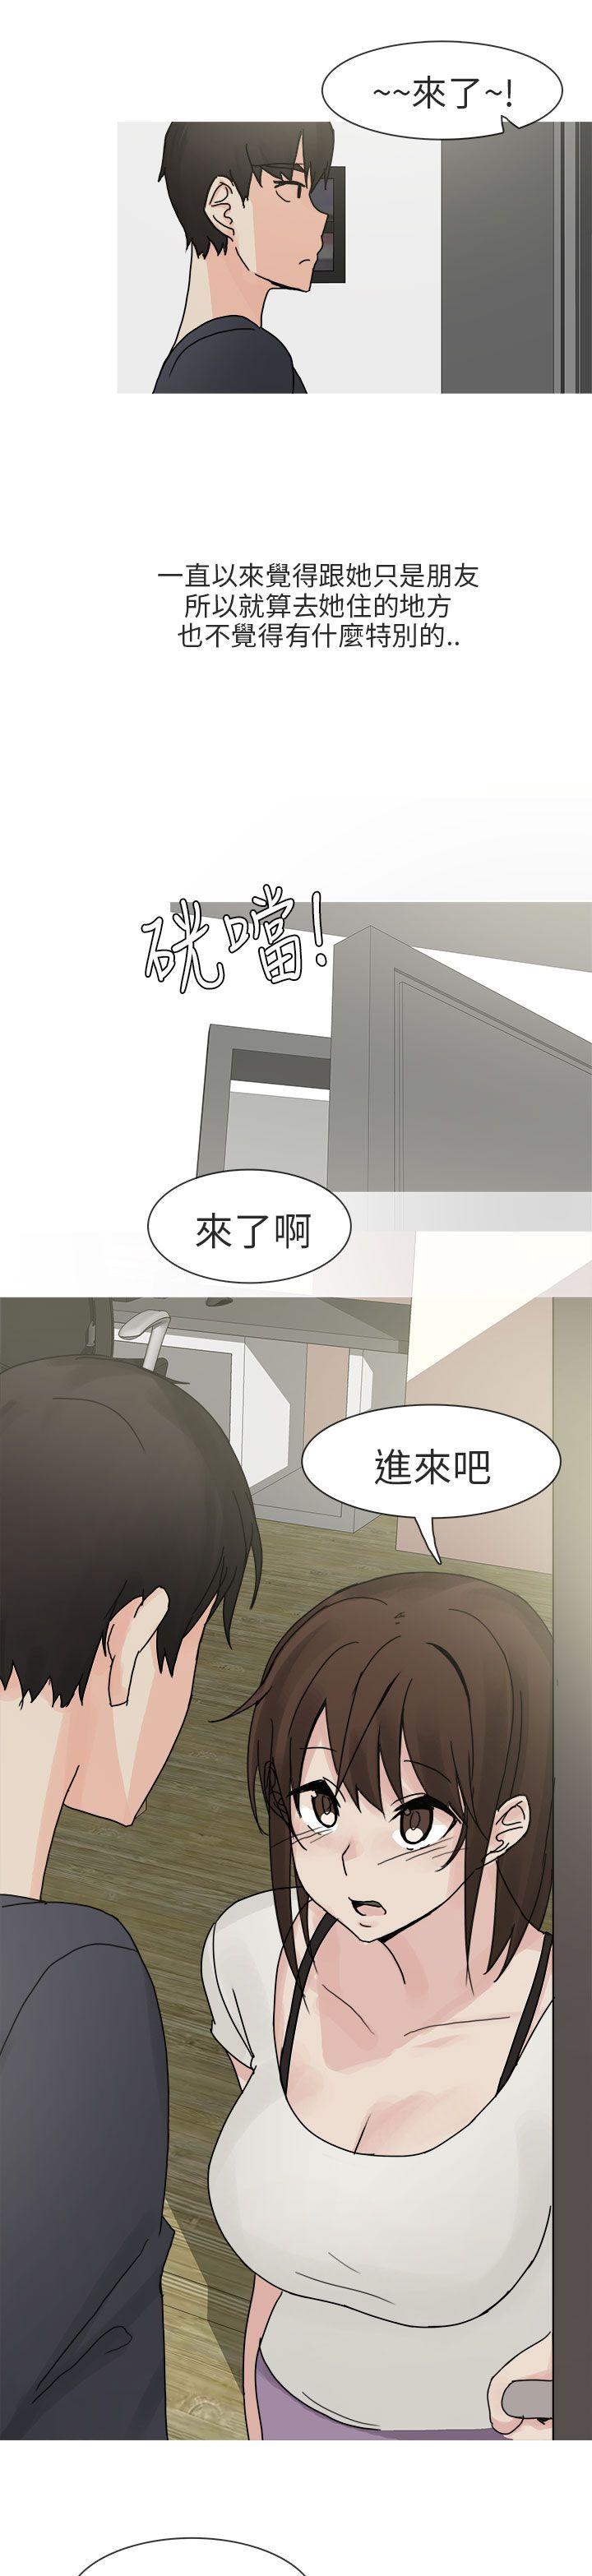 韩国污漫画 秘密Story第二季 与总务发生的秘密故事(上) 17